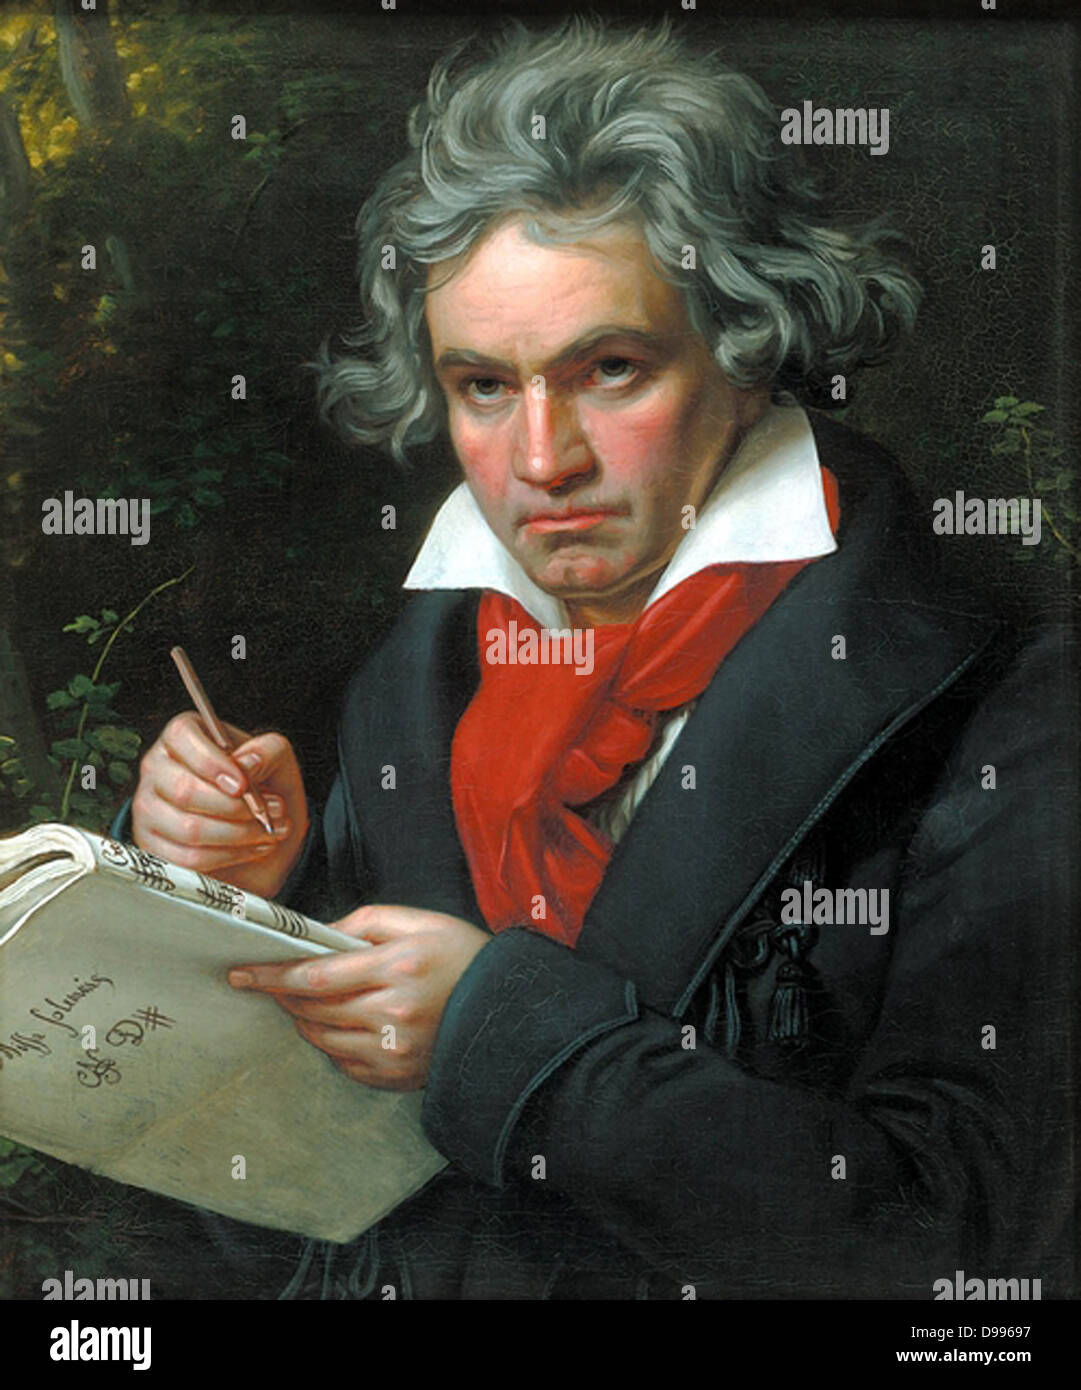 Ludwig van Beethoven (16 dicembre 1770- 26 marzo 1827) era un compositore tedesco e il pianista. Egli è stato una figura fondamentale nel periodo transitorio tra la classica e romantica epoche la musica classica occidentale e rimane uno dei più acclamati e influenti compositori di tutti i tempi. Ritratto di Beethoven in 1818 da agosto Klöber Foto Stock